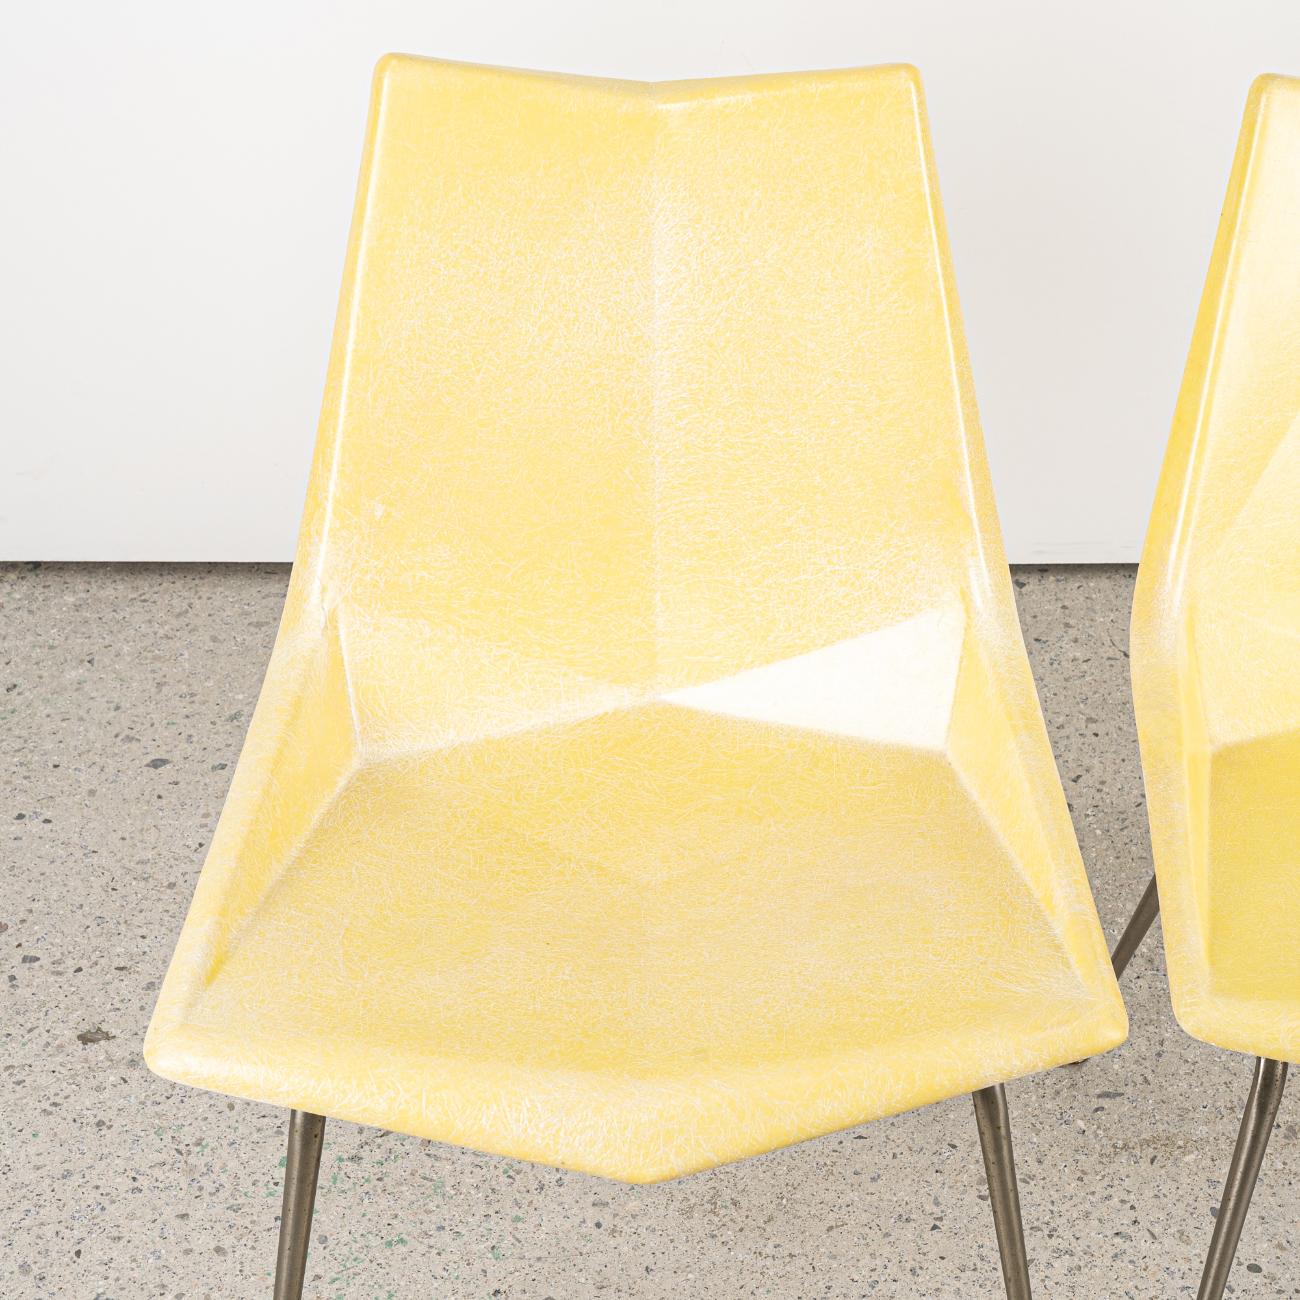 Une chaise Origami de Paul McCobb des années 1950 pour St. John. 
Le siège en fibre de verre est moulé en angle, rappelant la technique japonaise de l'origami. 
Le siège en fibre de verre de couleur jaune citron est en bon état d'origine.
Une